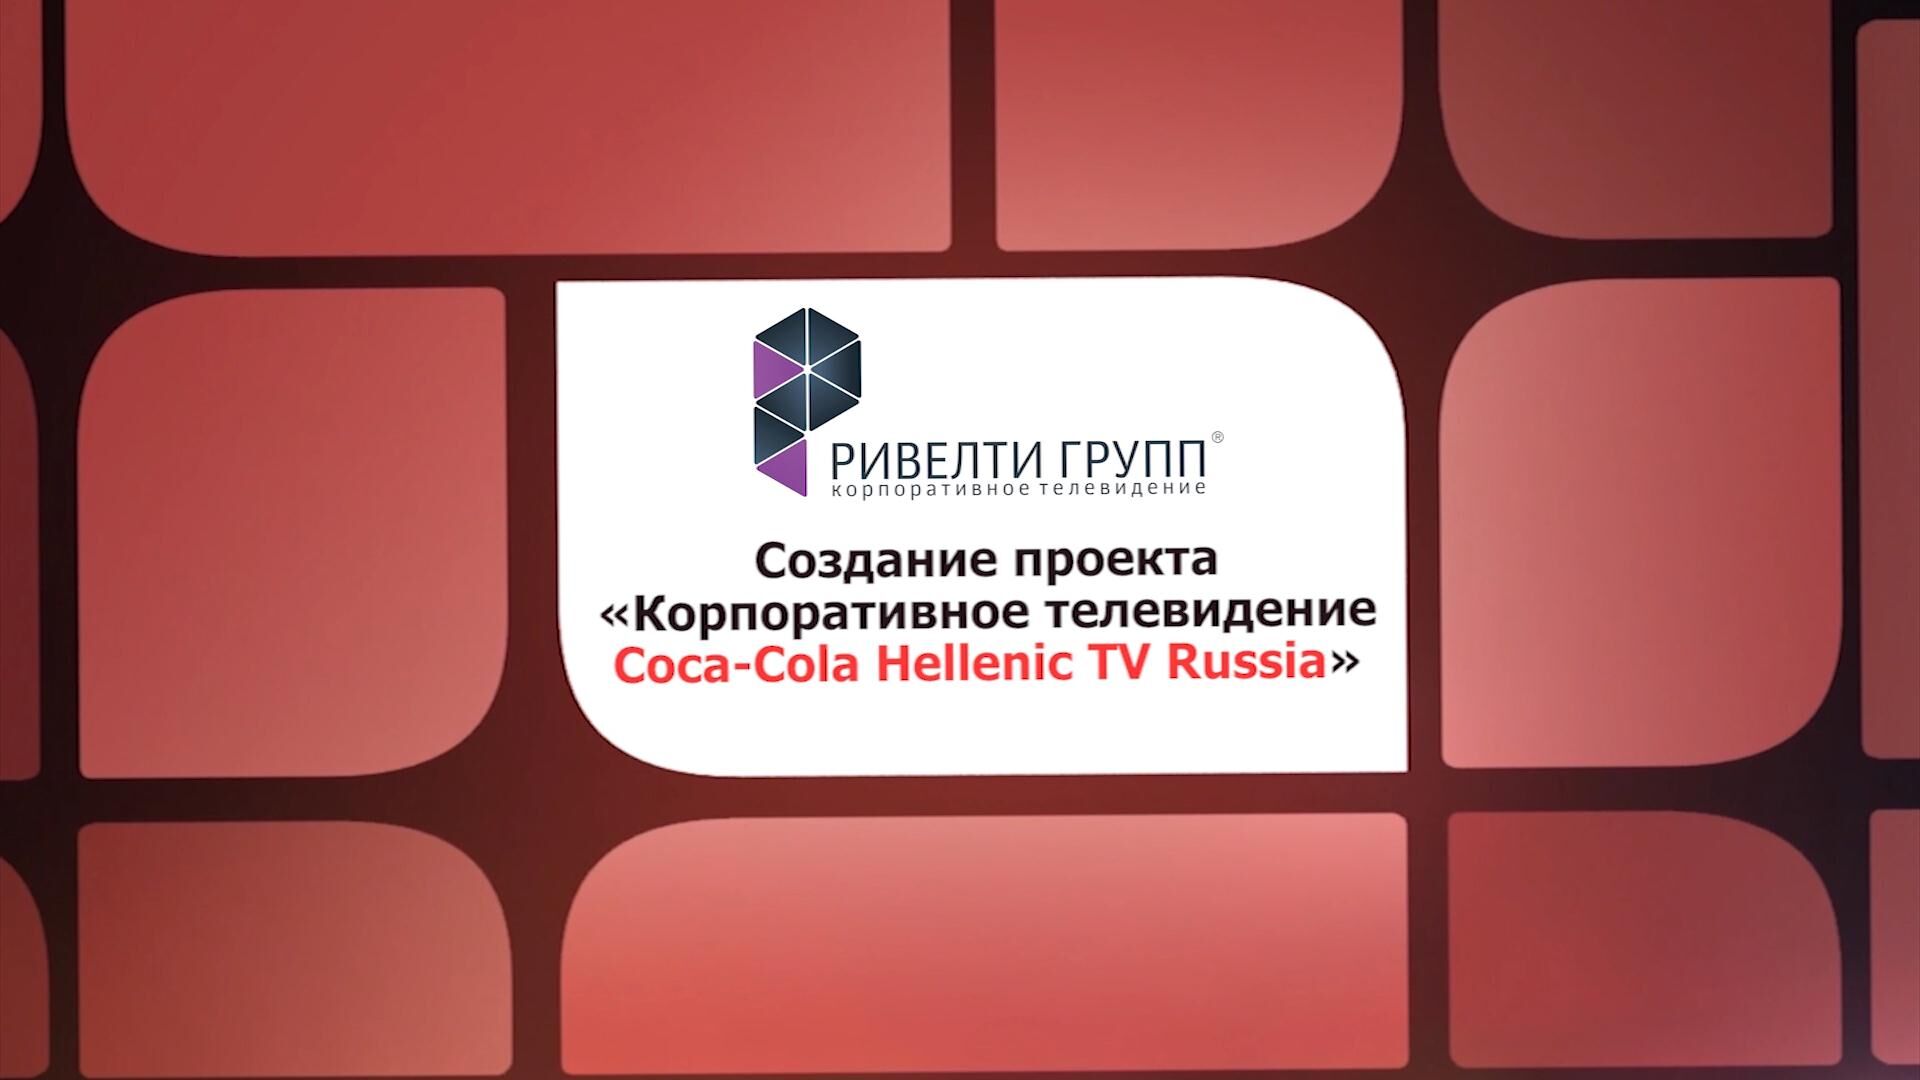 Corporate television of Coca-Cola Hellenic